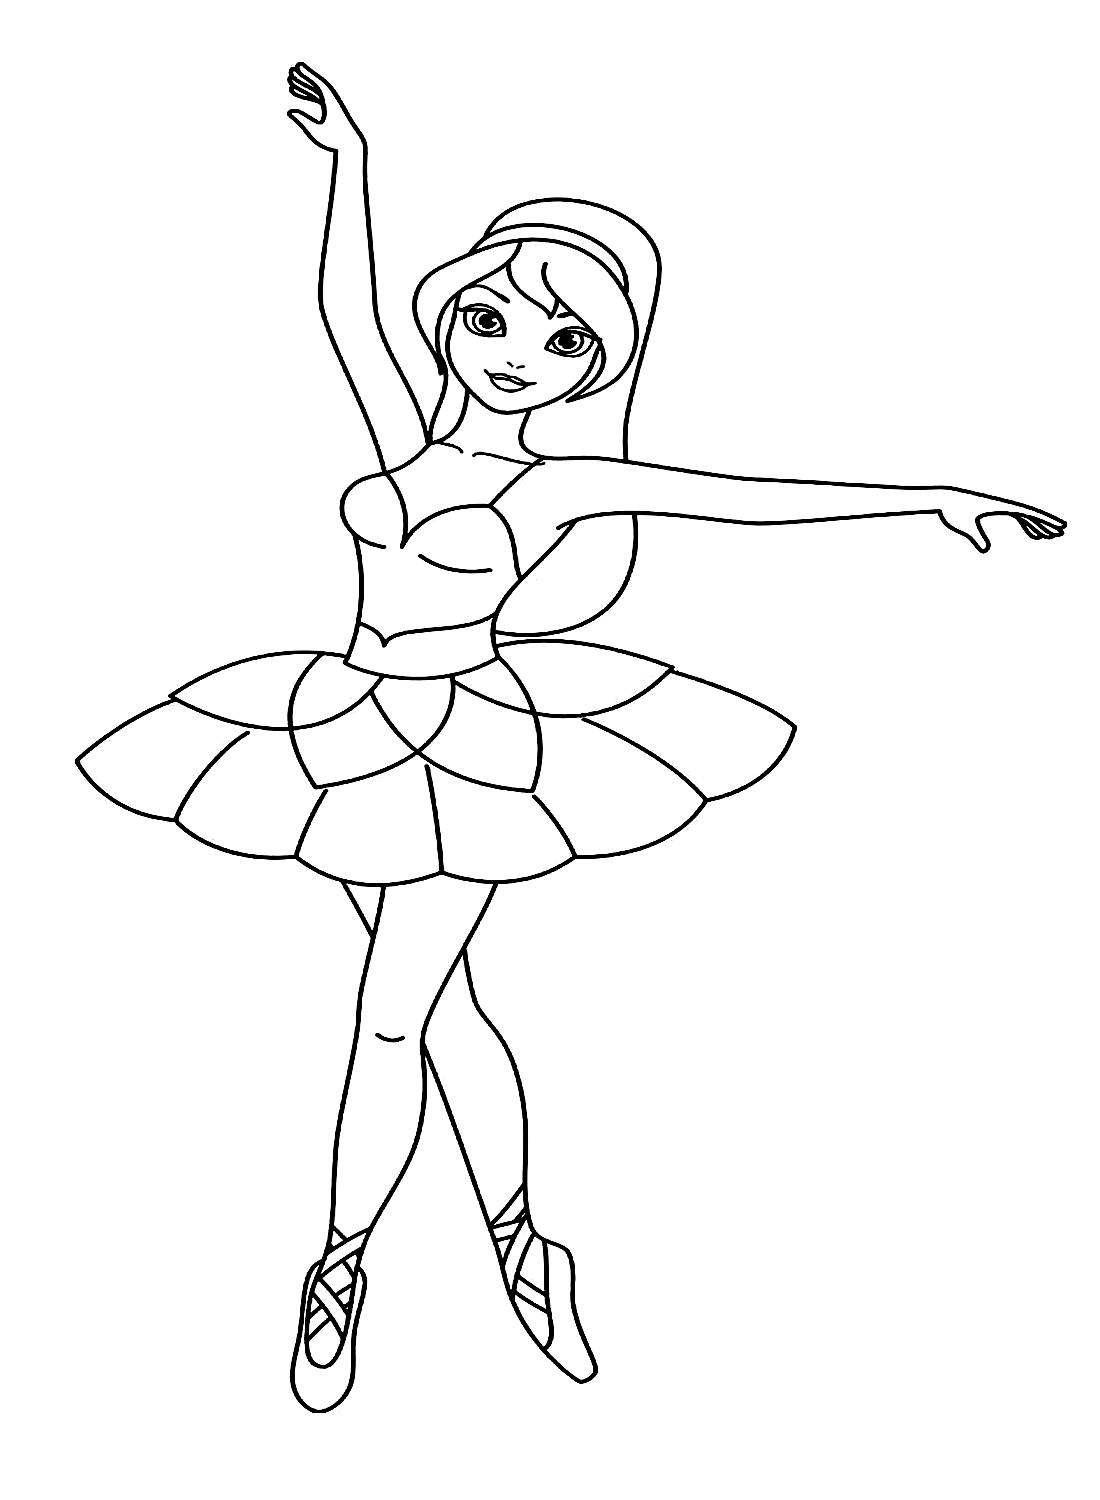 Ein wunderschönes Ballerina-Mädchenbild von Ballerina